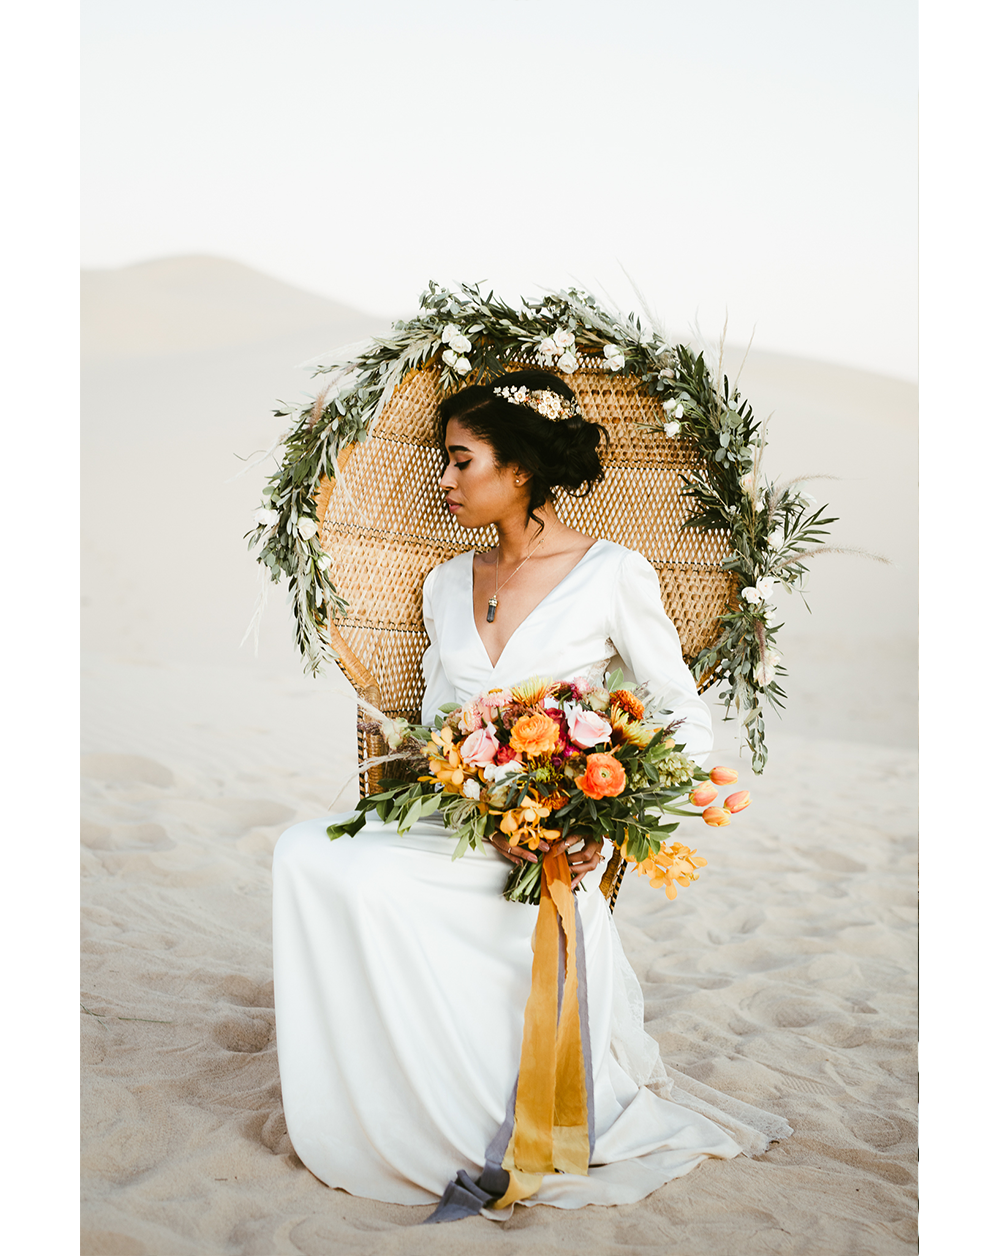 Frida enamorada boda en el desierto de baja california mexico 13.png